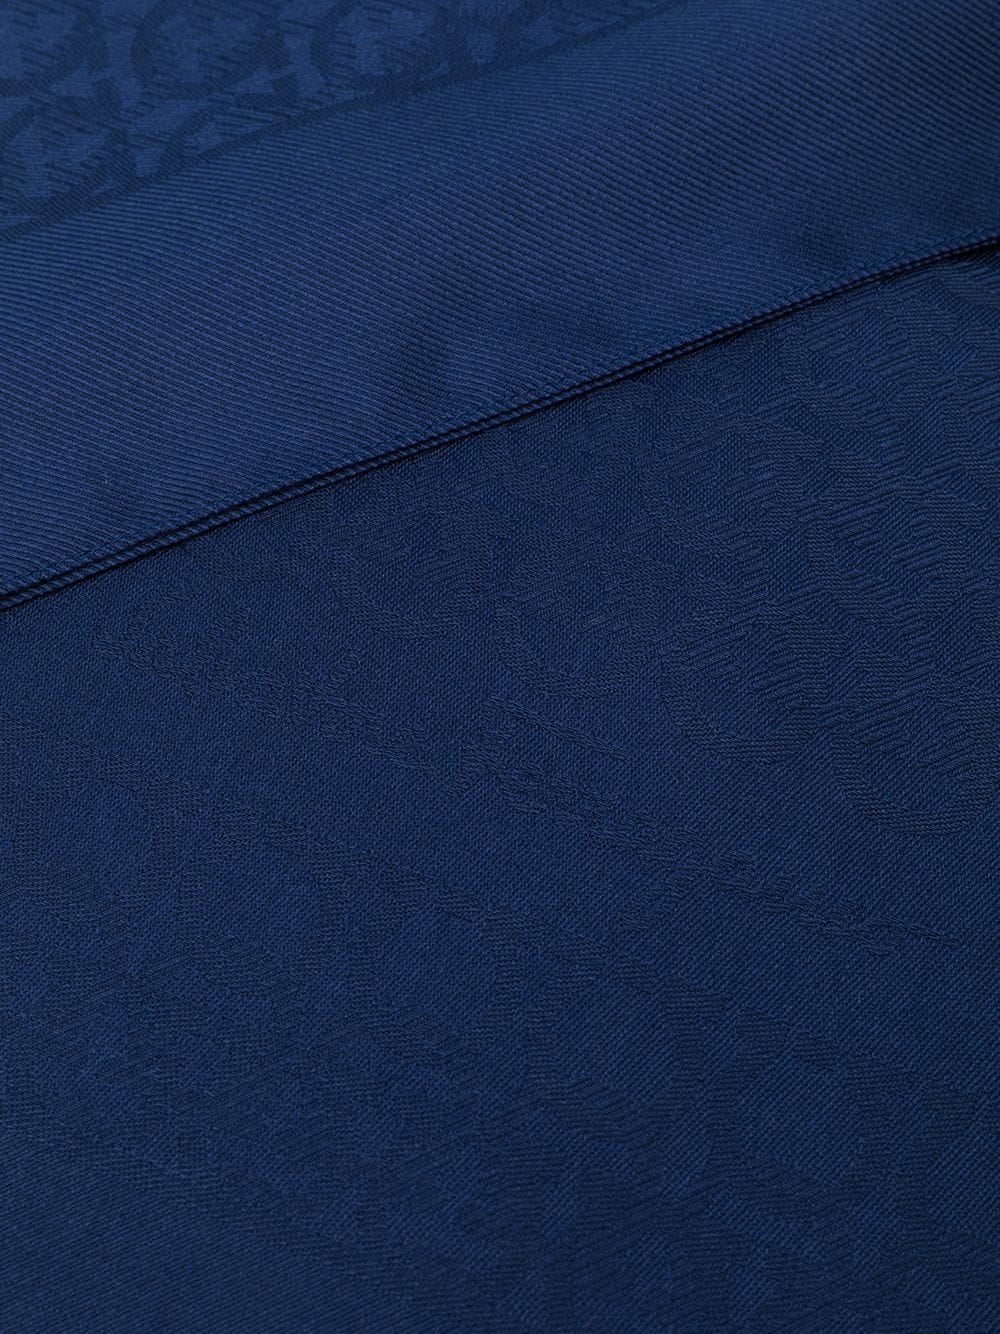 精緻的藍色絲羊毛混紡女性SS24款Gancini魚鉤印花披巾